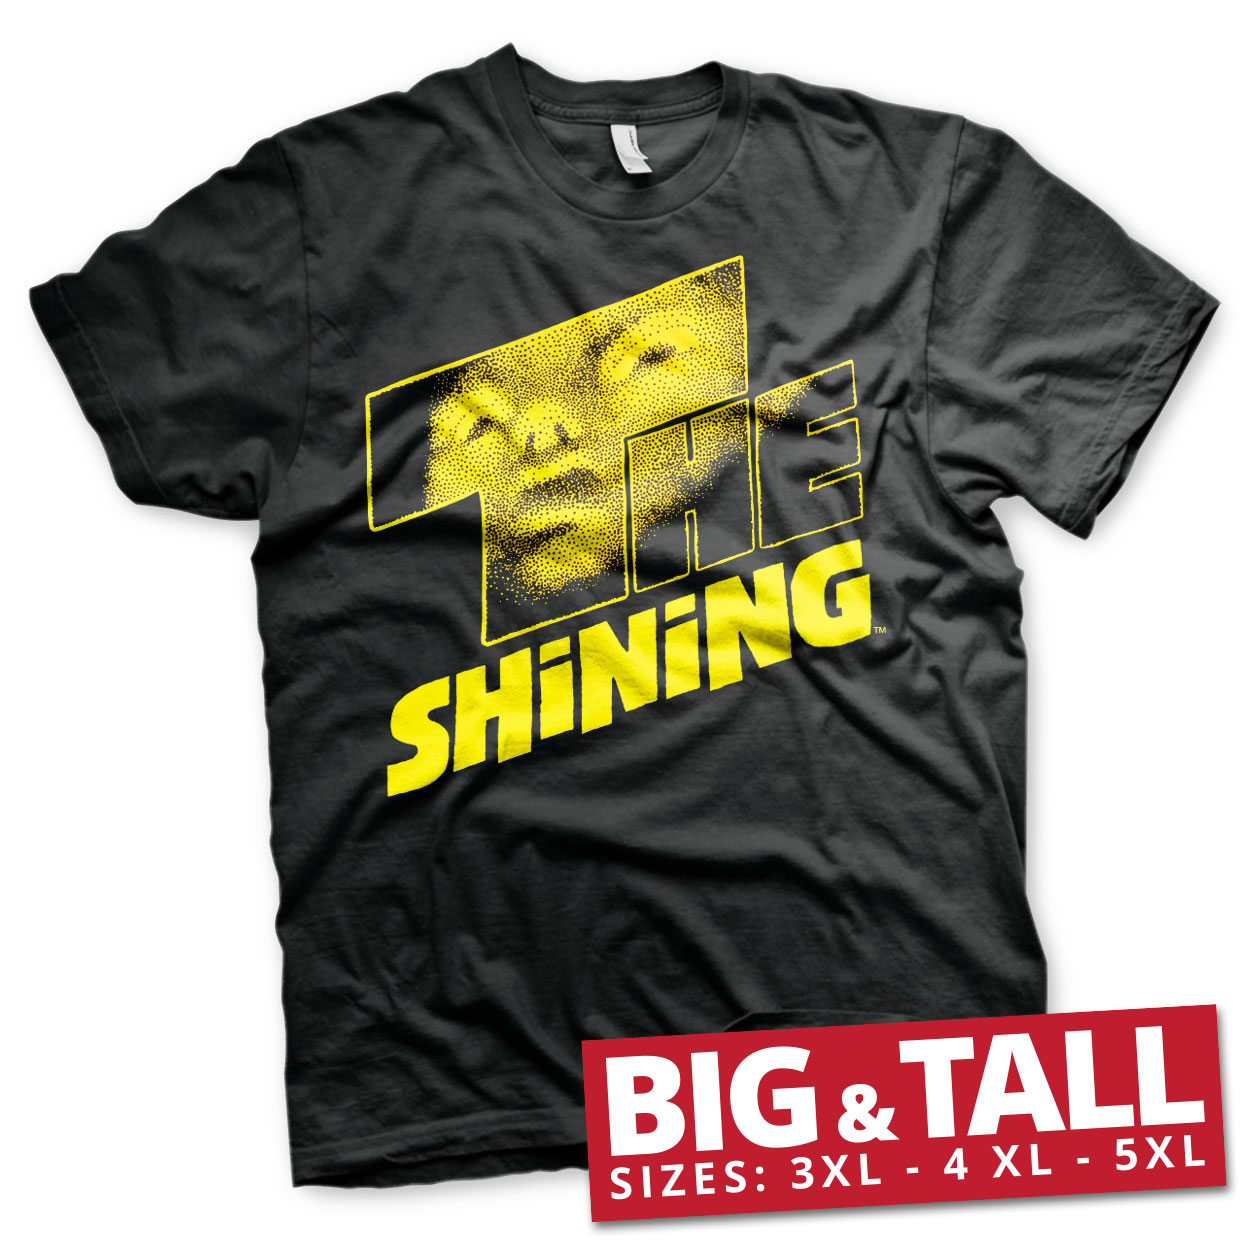 The Shining Big & Tall T-Shirt